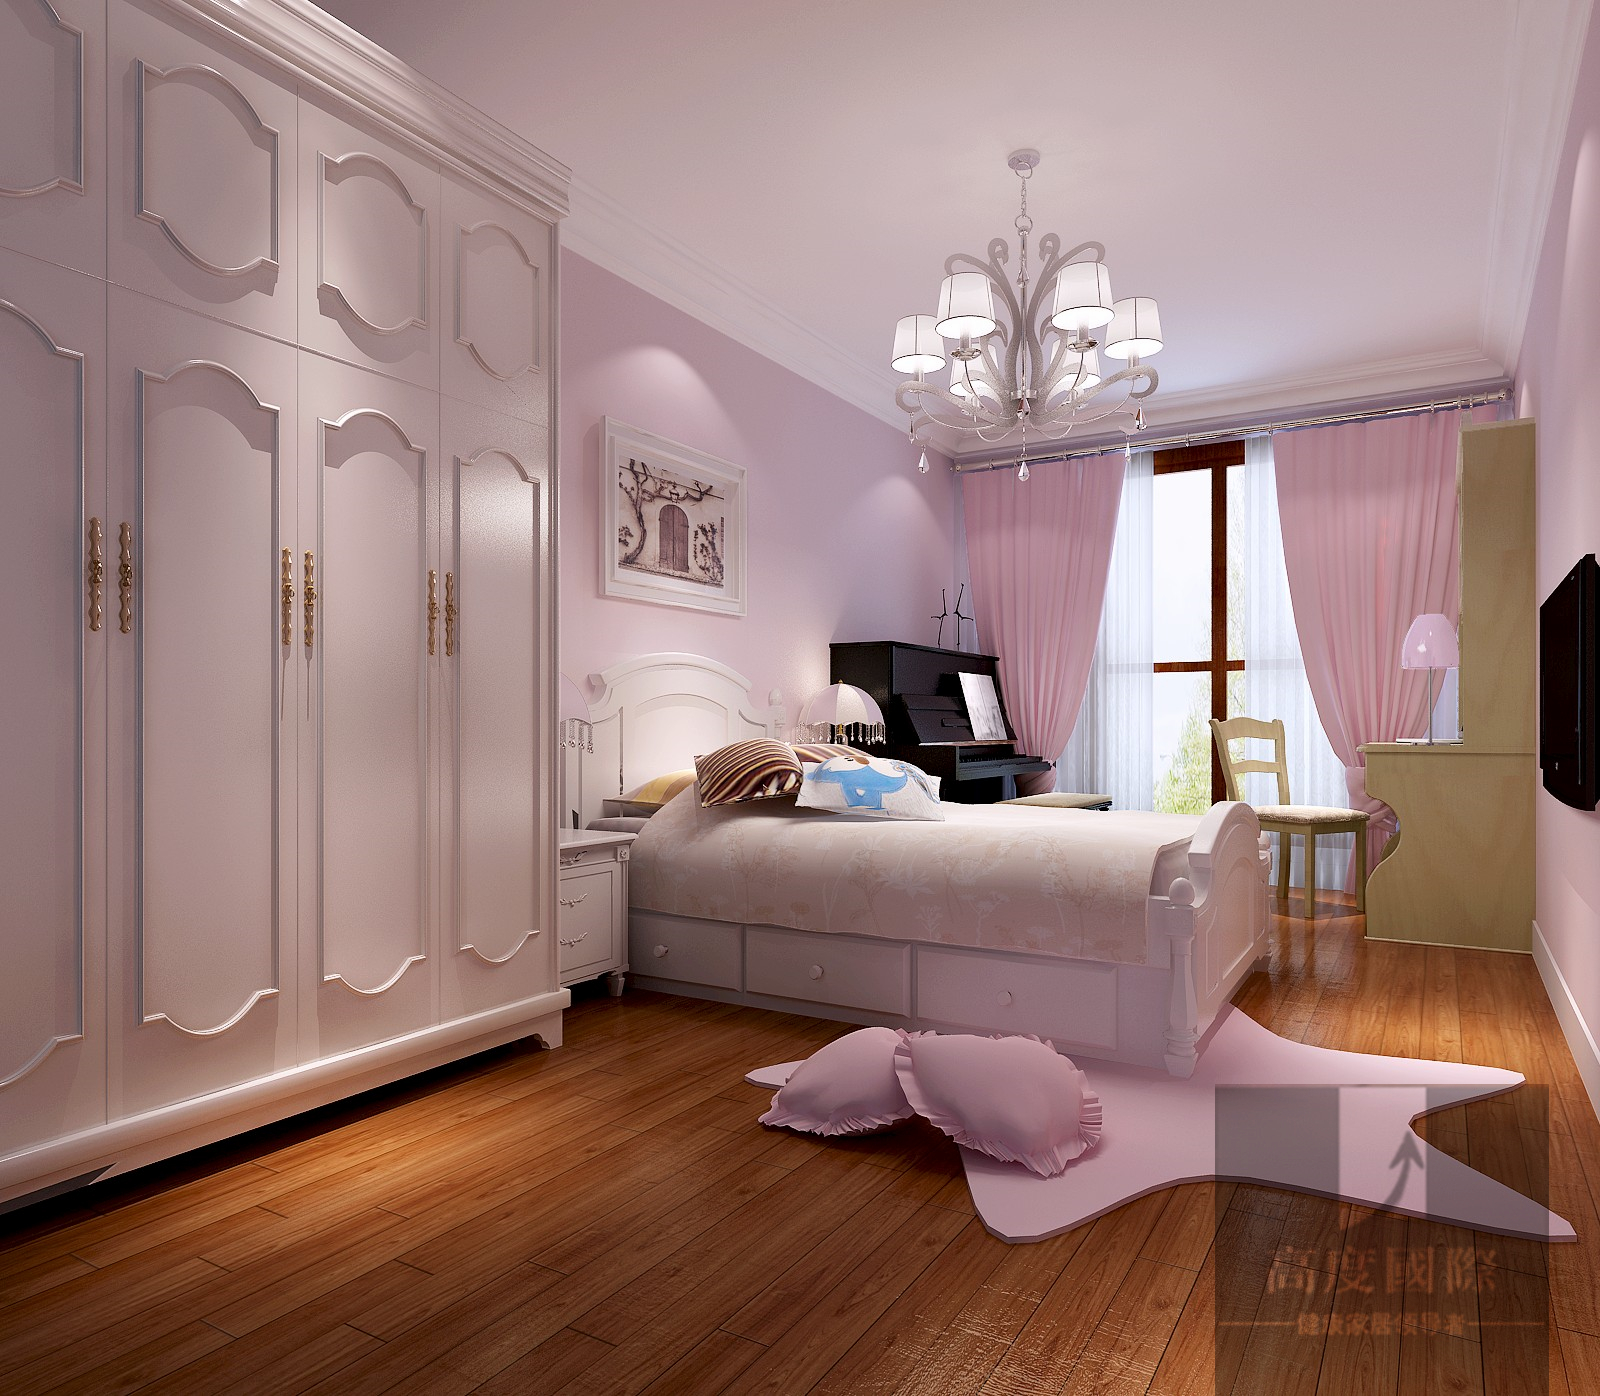 三居 美式 休闲 卧室图片来自高度国际装饰韩冰在百旺家园150㎡美式的分享